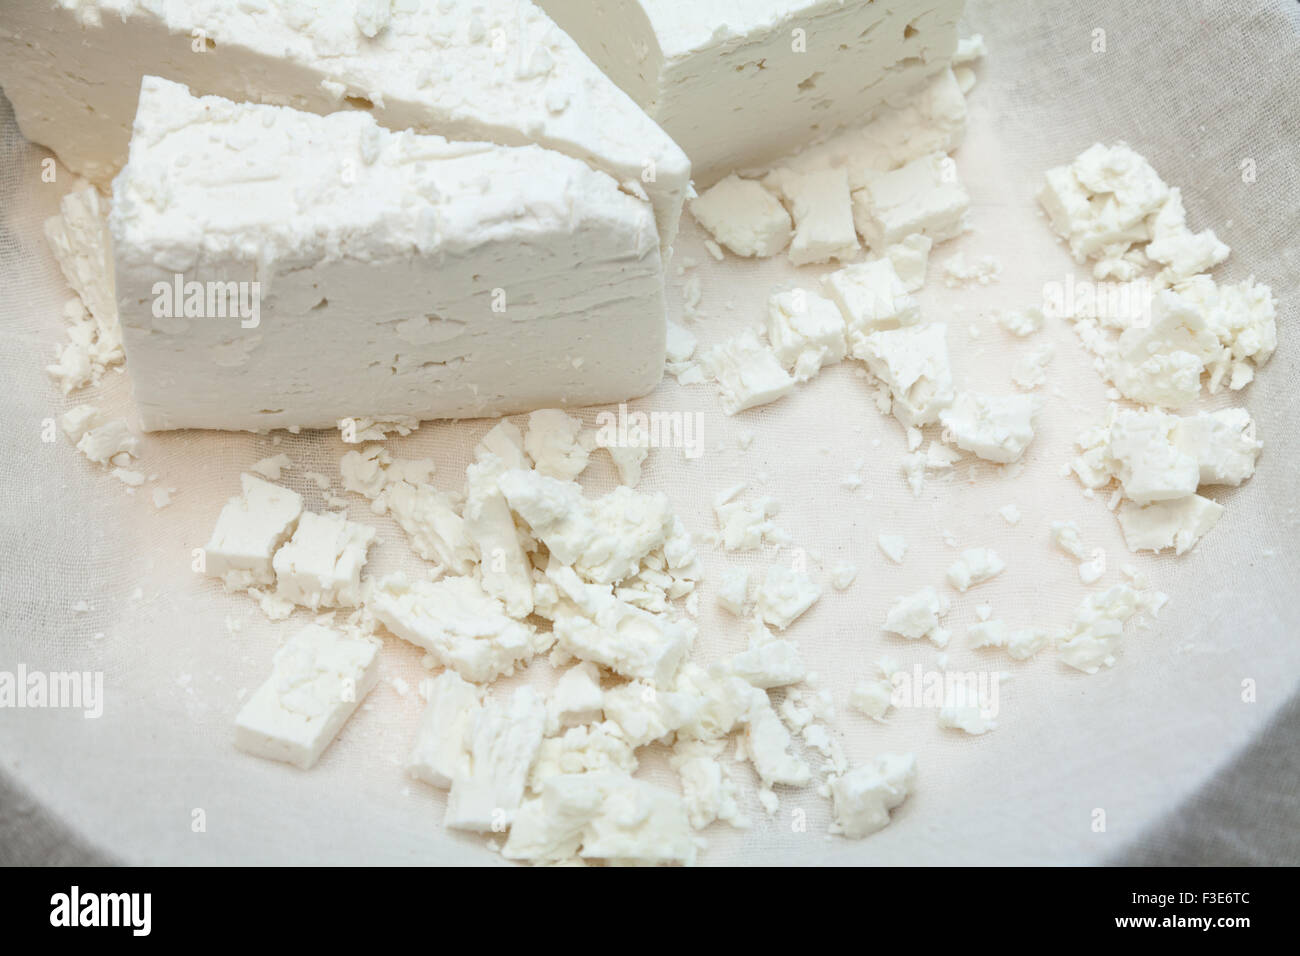 Produits : fromage feta méditerranéen doux brut cubes de fromage blanc et rond sur la plaque en tissu blanc. Banque D'Images